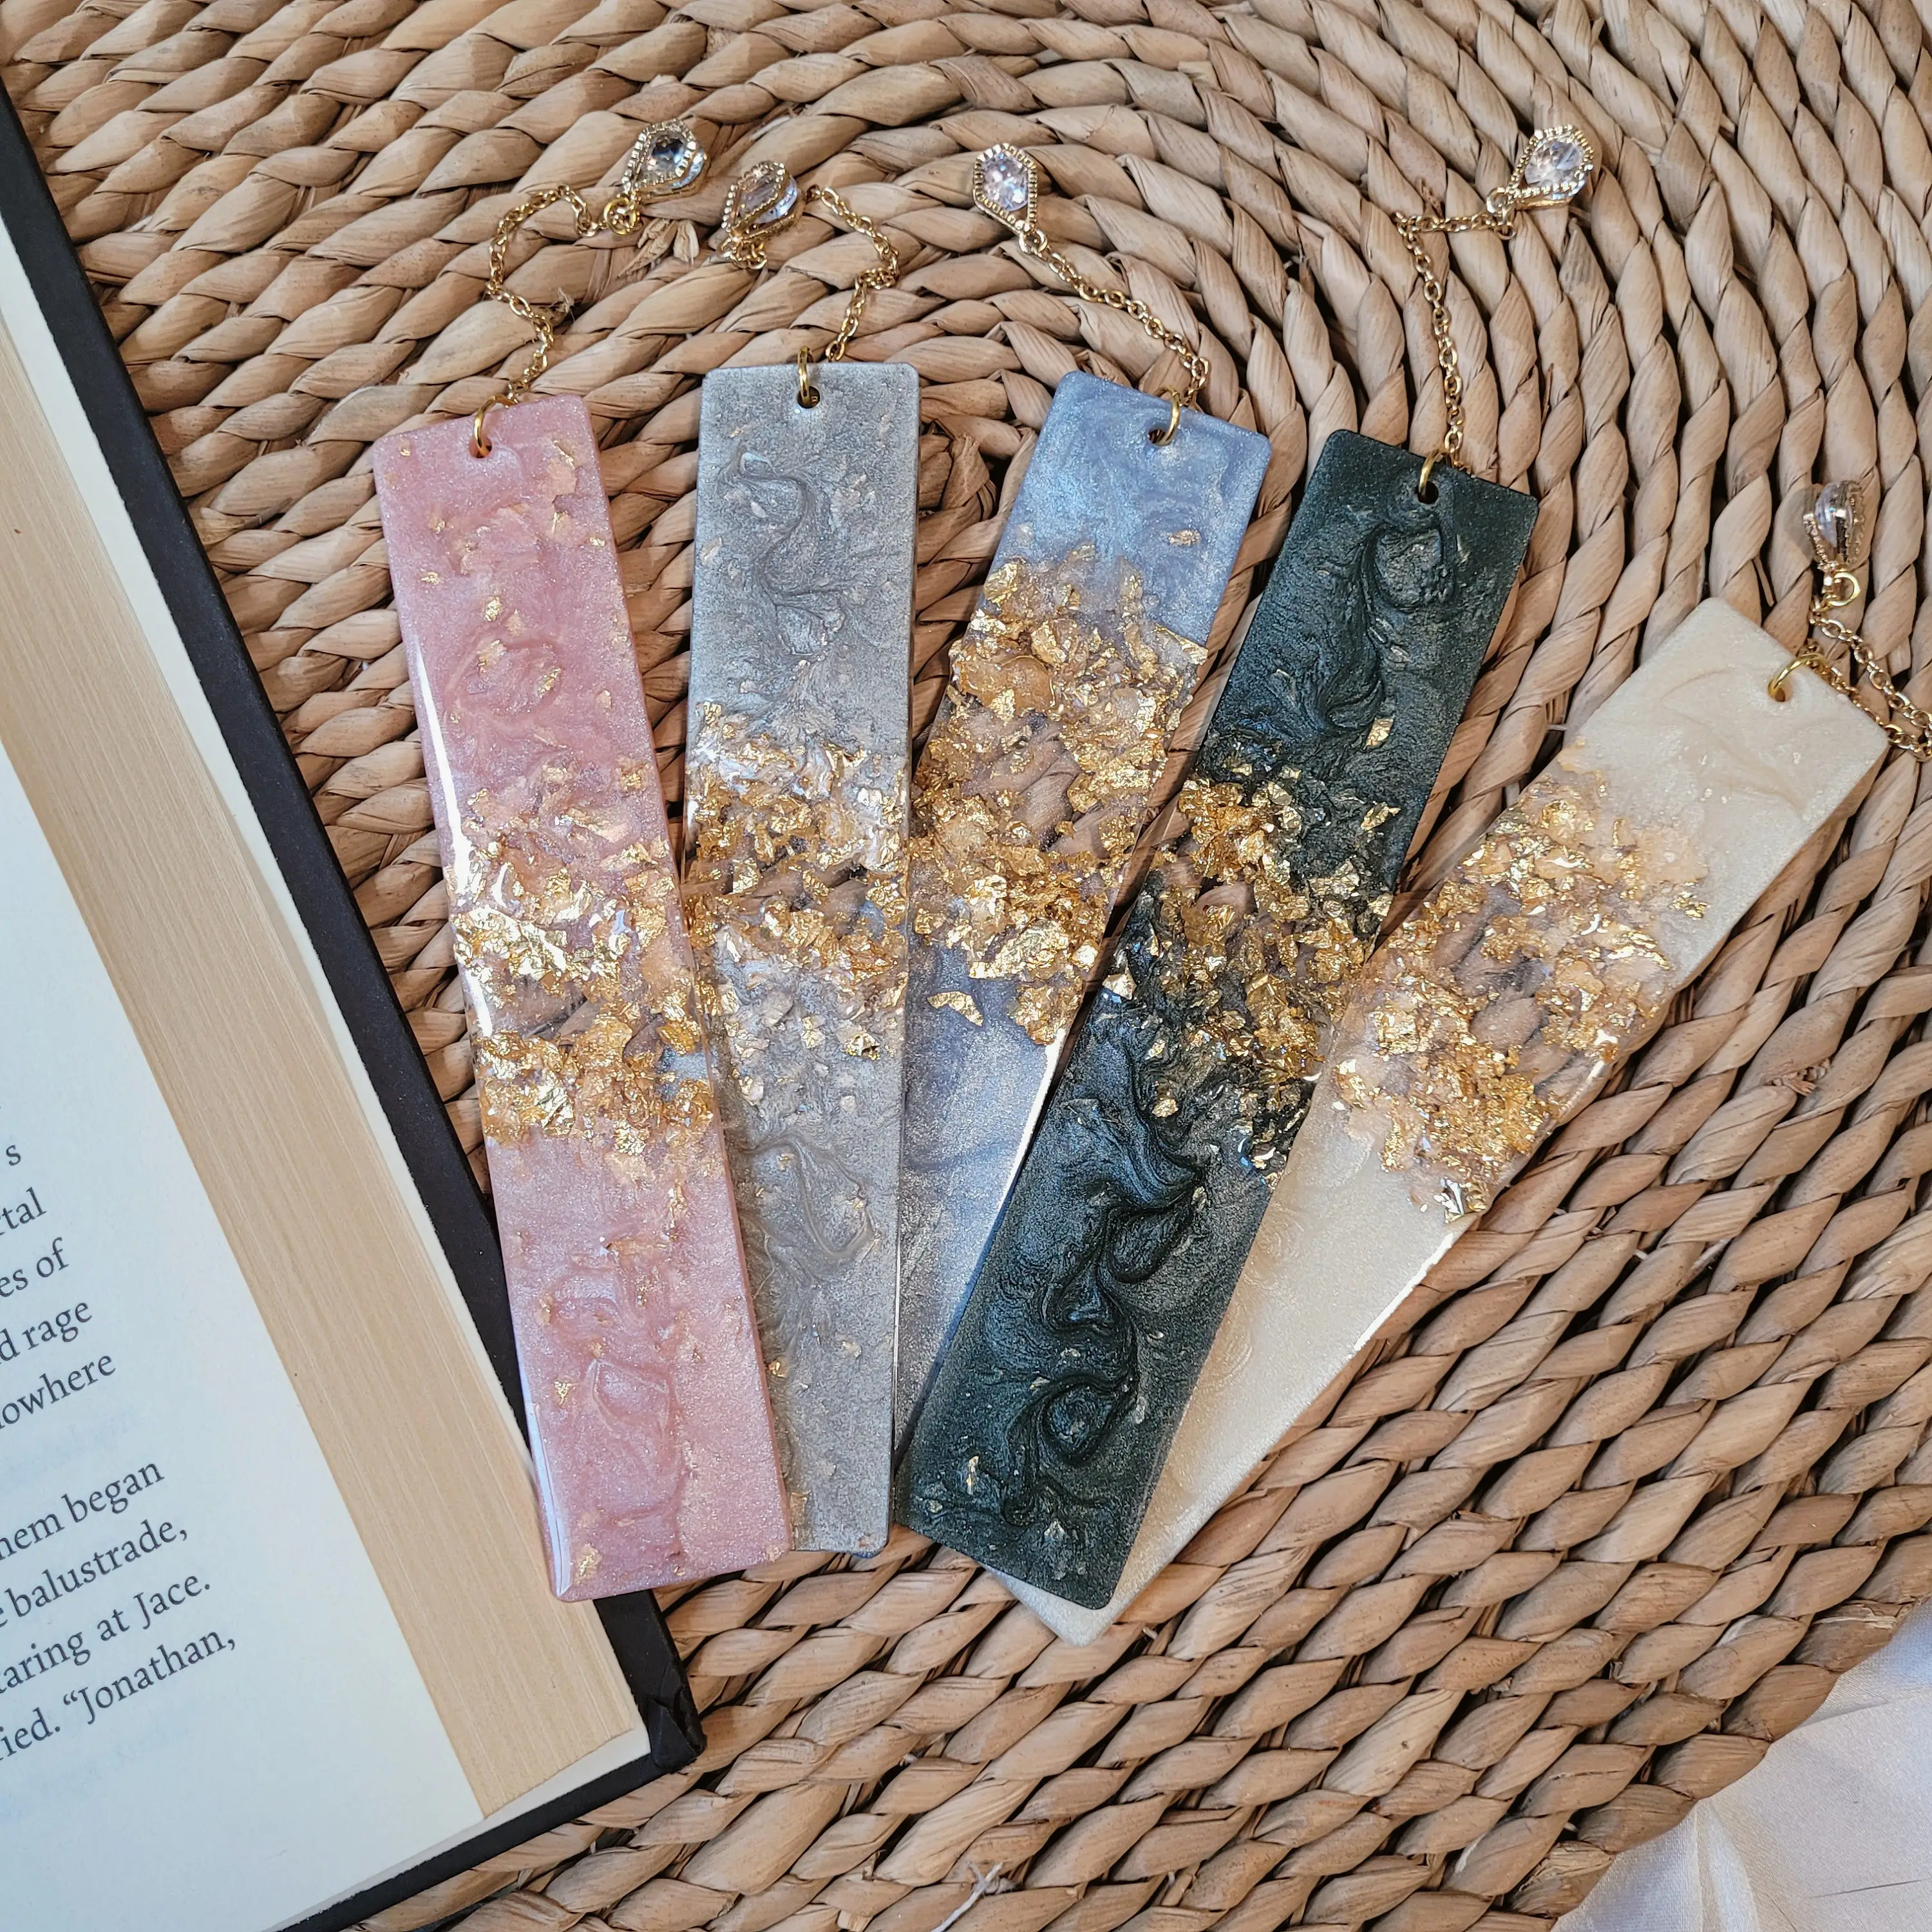 हाथ से दोषपूर्ण सोने की पत्ती बनावट वाला राल बुकमार्क